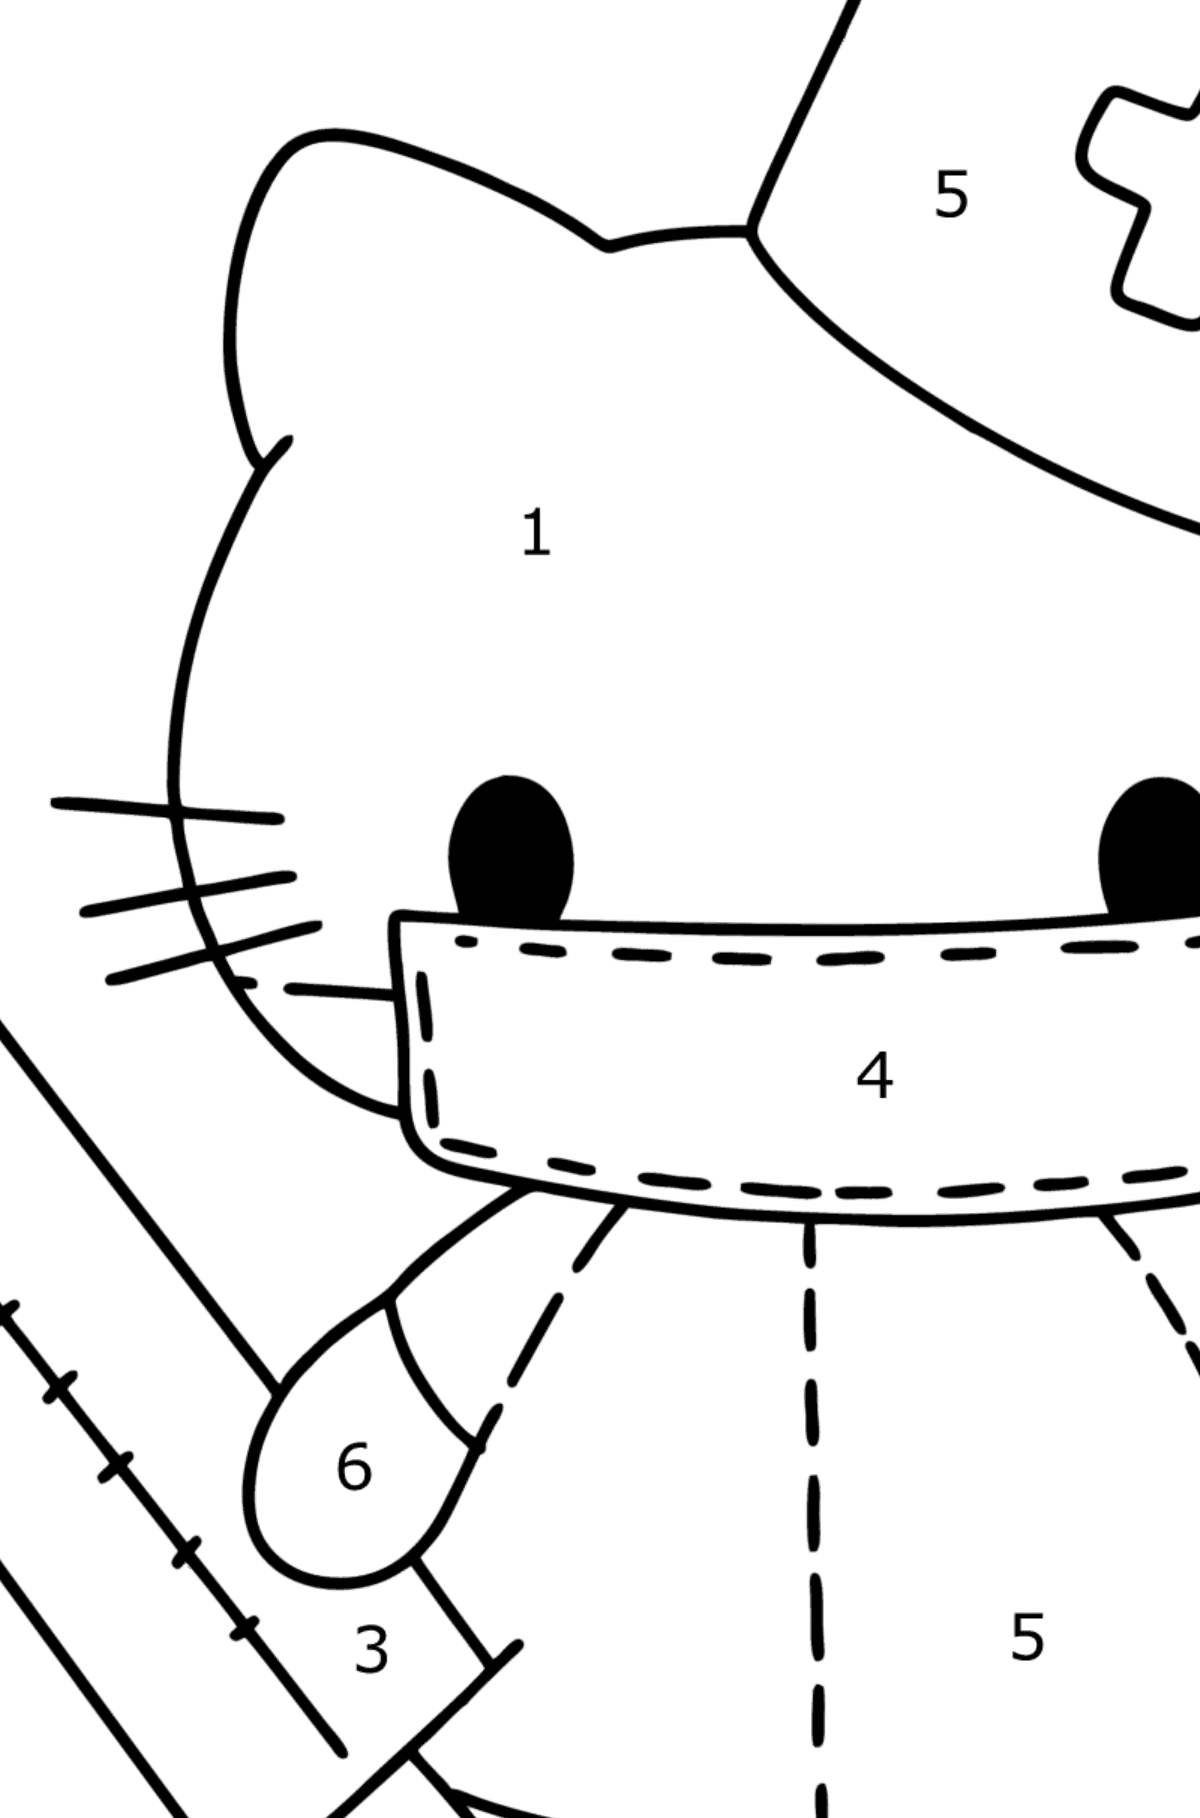 Boyama sayfası Hello Kitty hemşire - Sayılarla Boyama çocuklar için